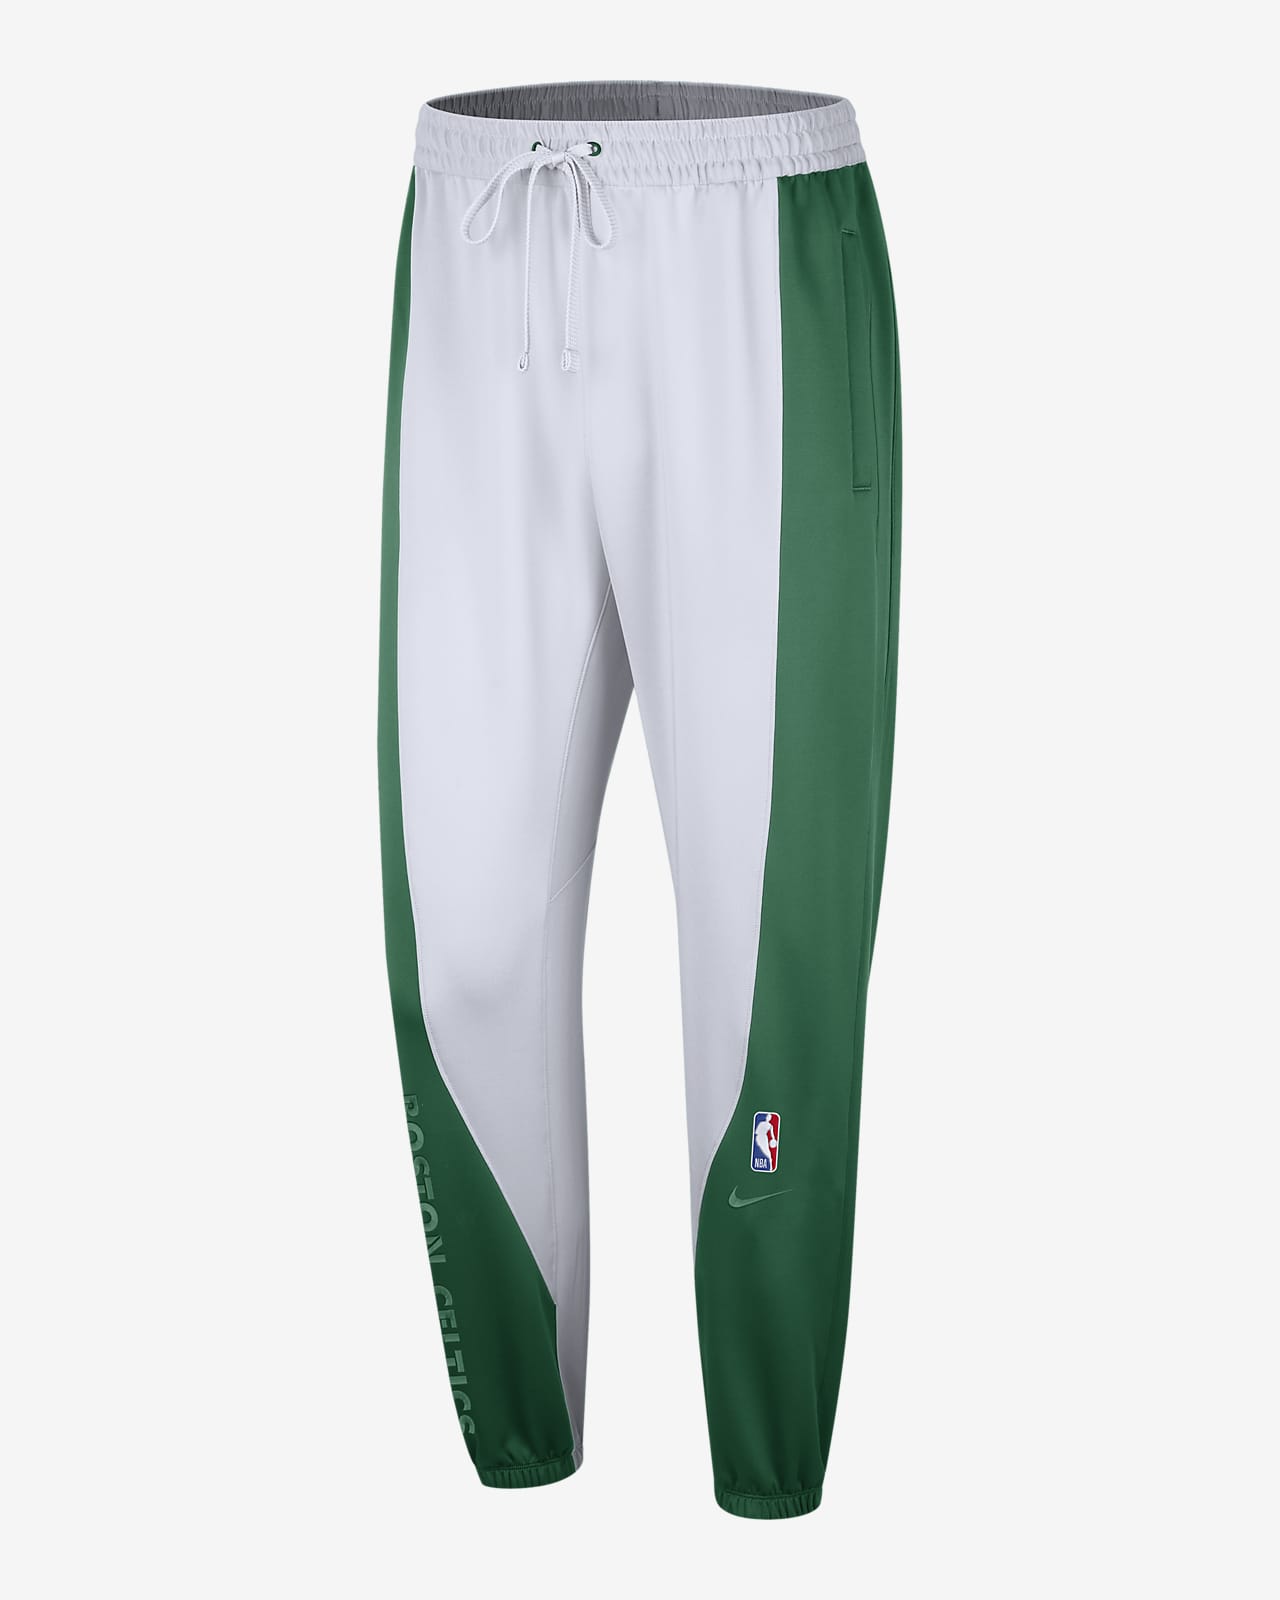 Boston Celtics Showtime Pantalón Nike Dri-FIT NBA - Hombre